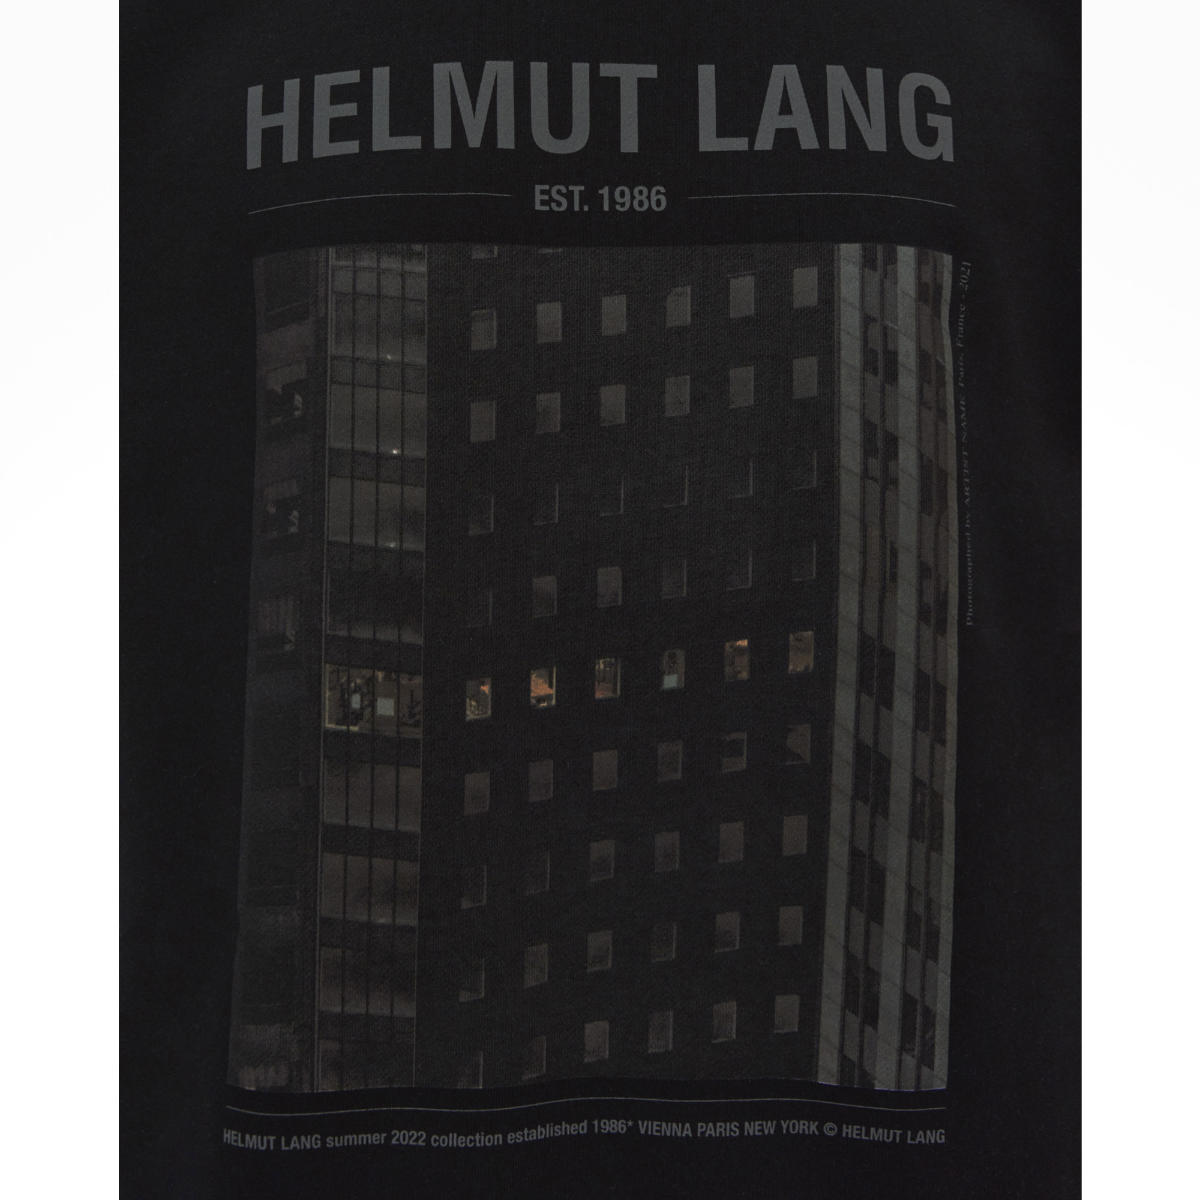 Helmut Lang Presents Its New PF22 Postcard Capsule